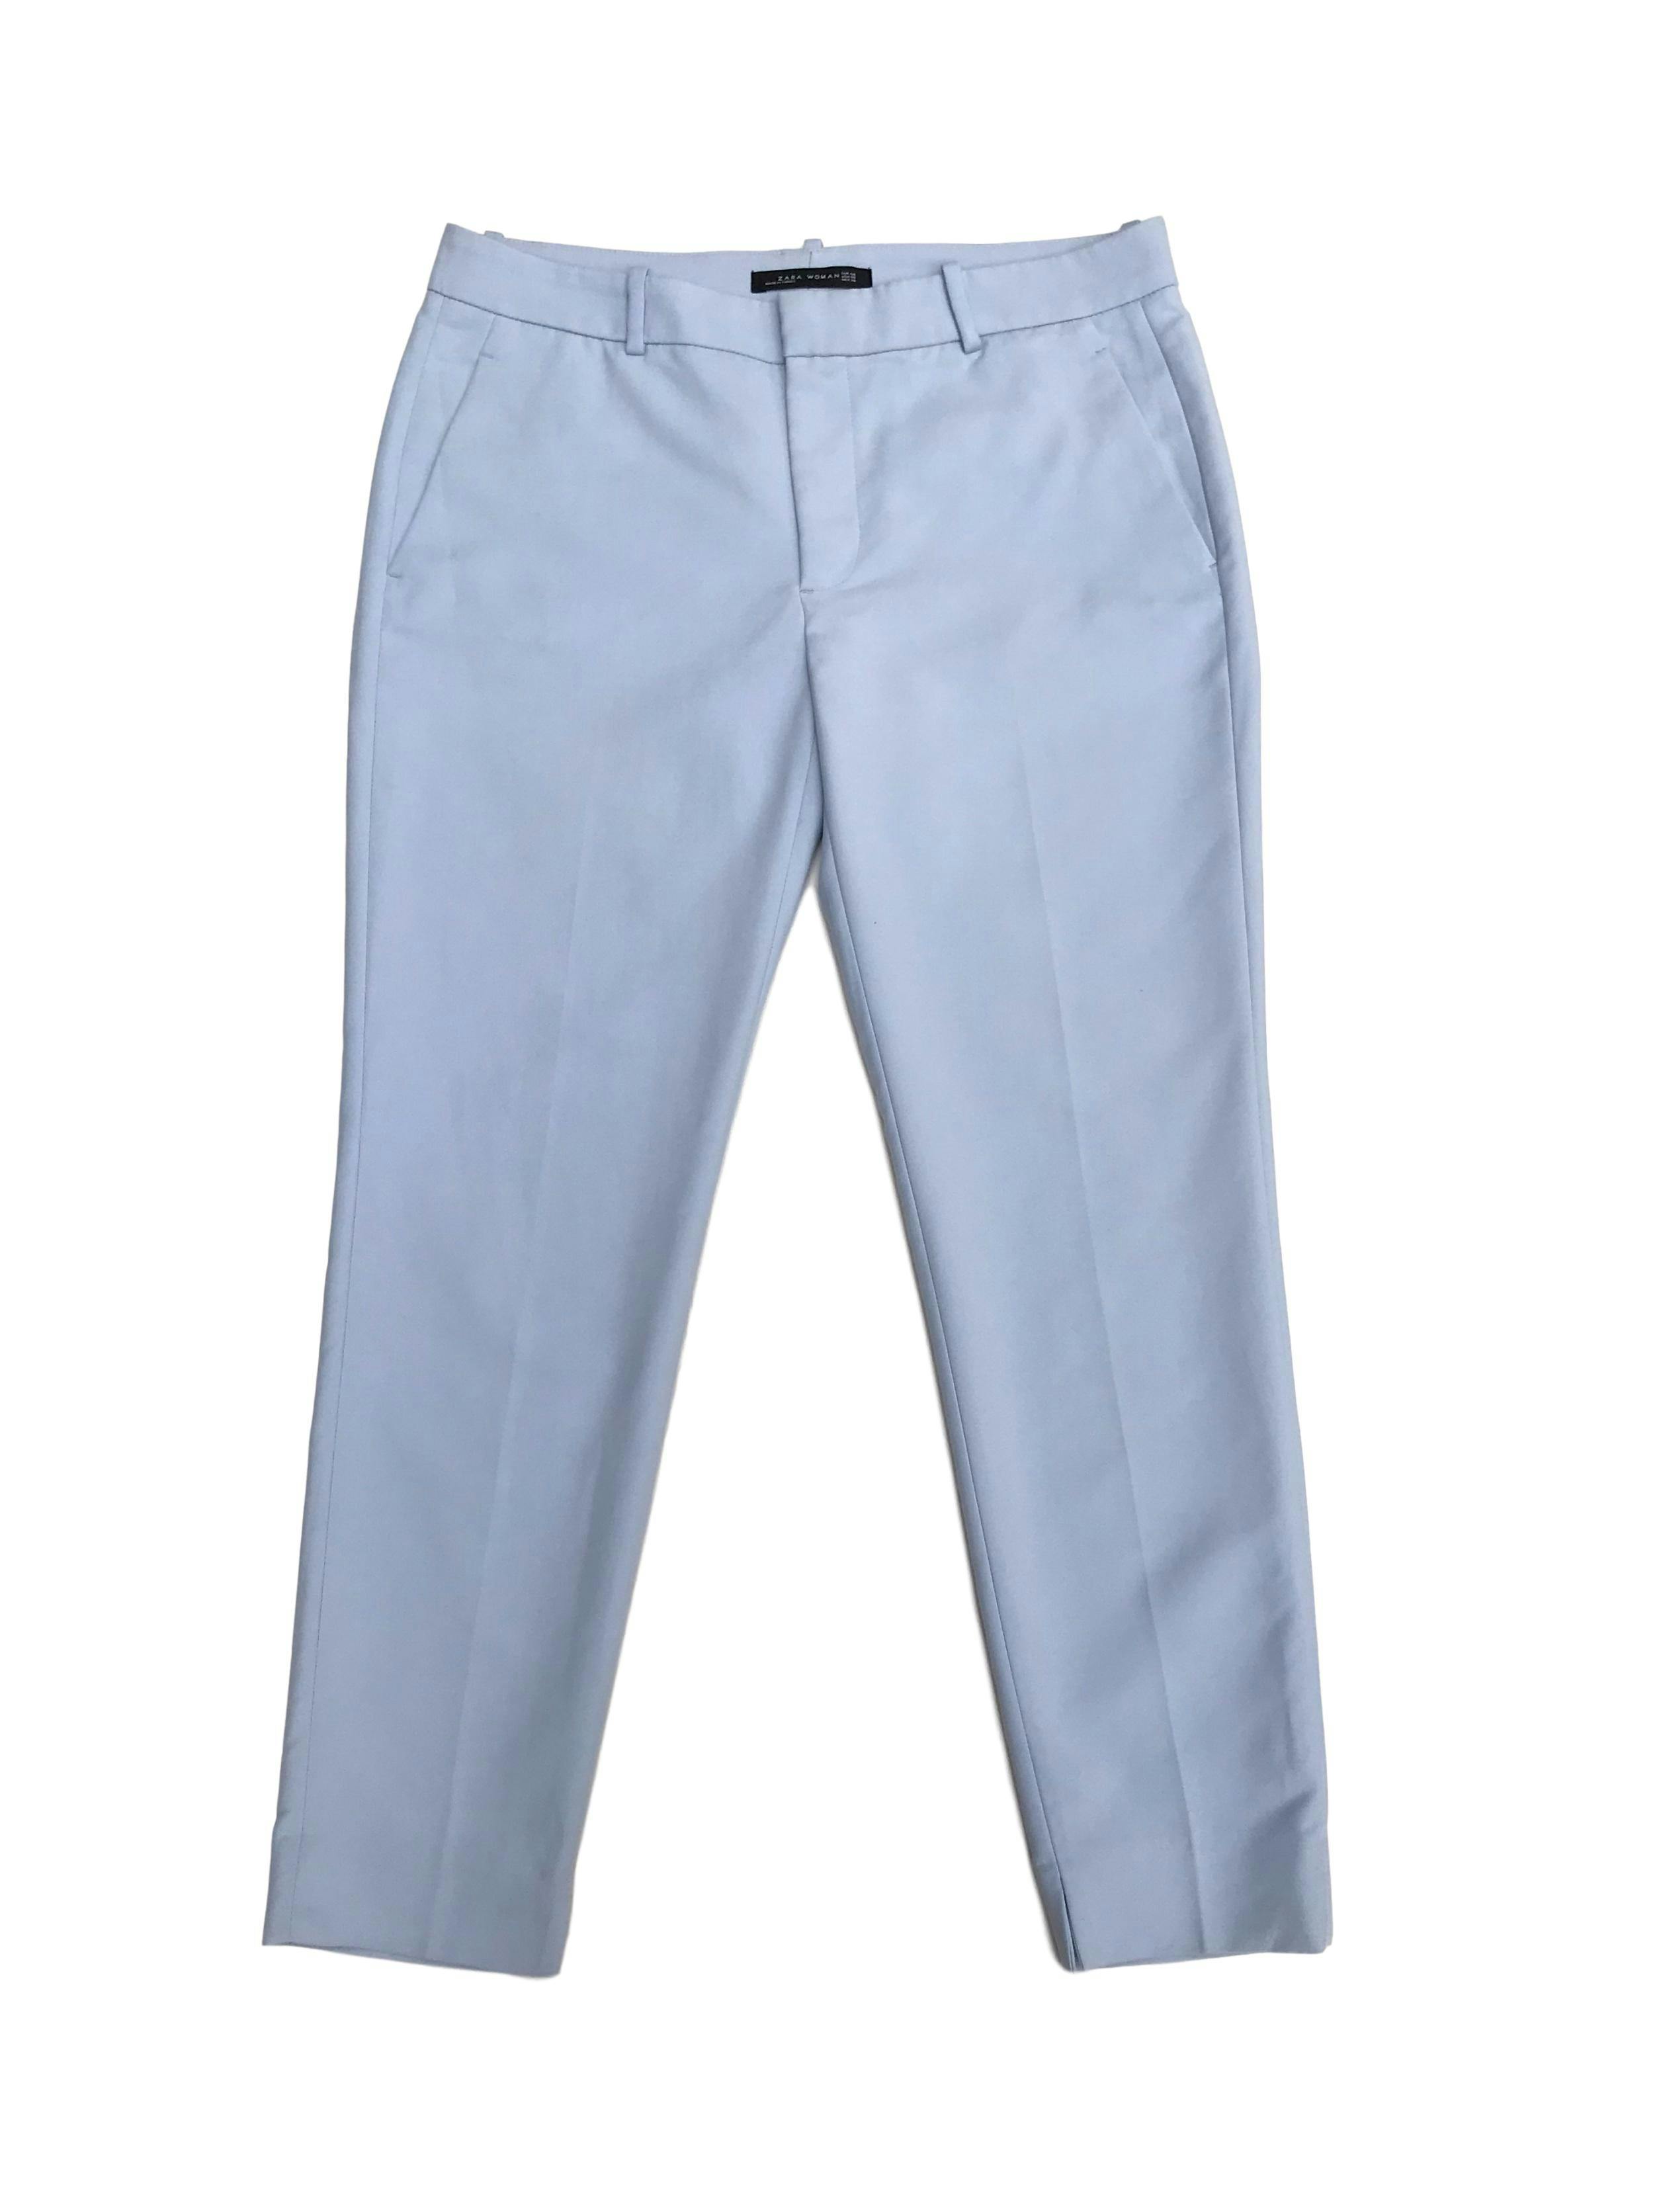 Pantalón Zara baby blue con bolsillos delanteros. Pretina 86cm Cadera 106cm. Precio original S/ 160